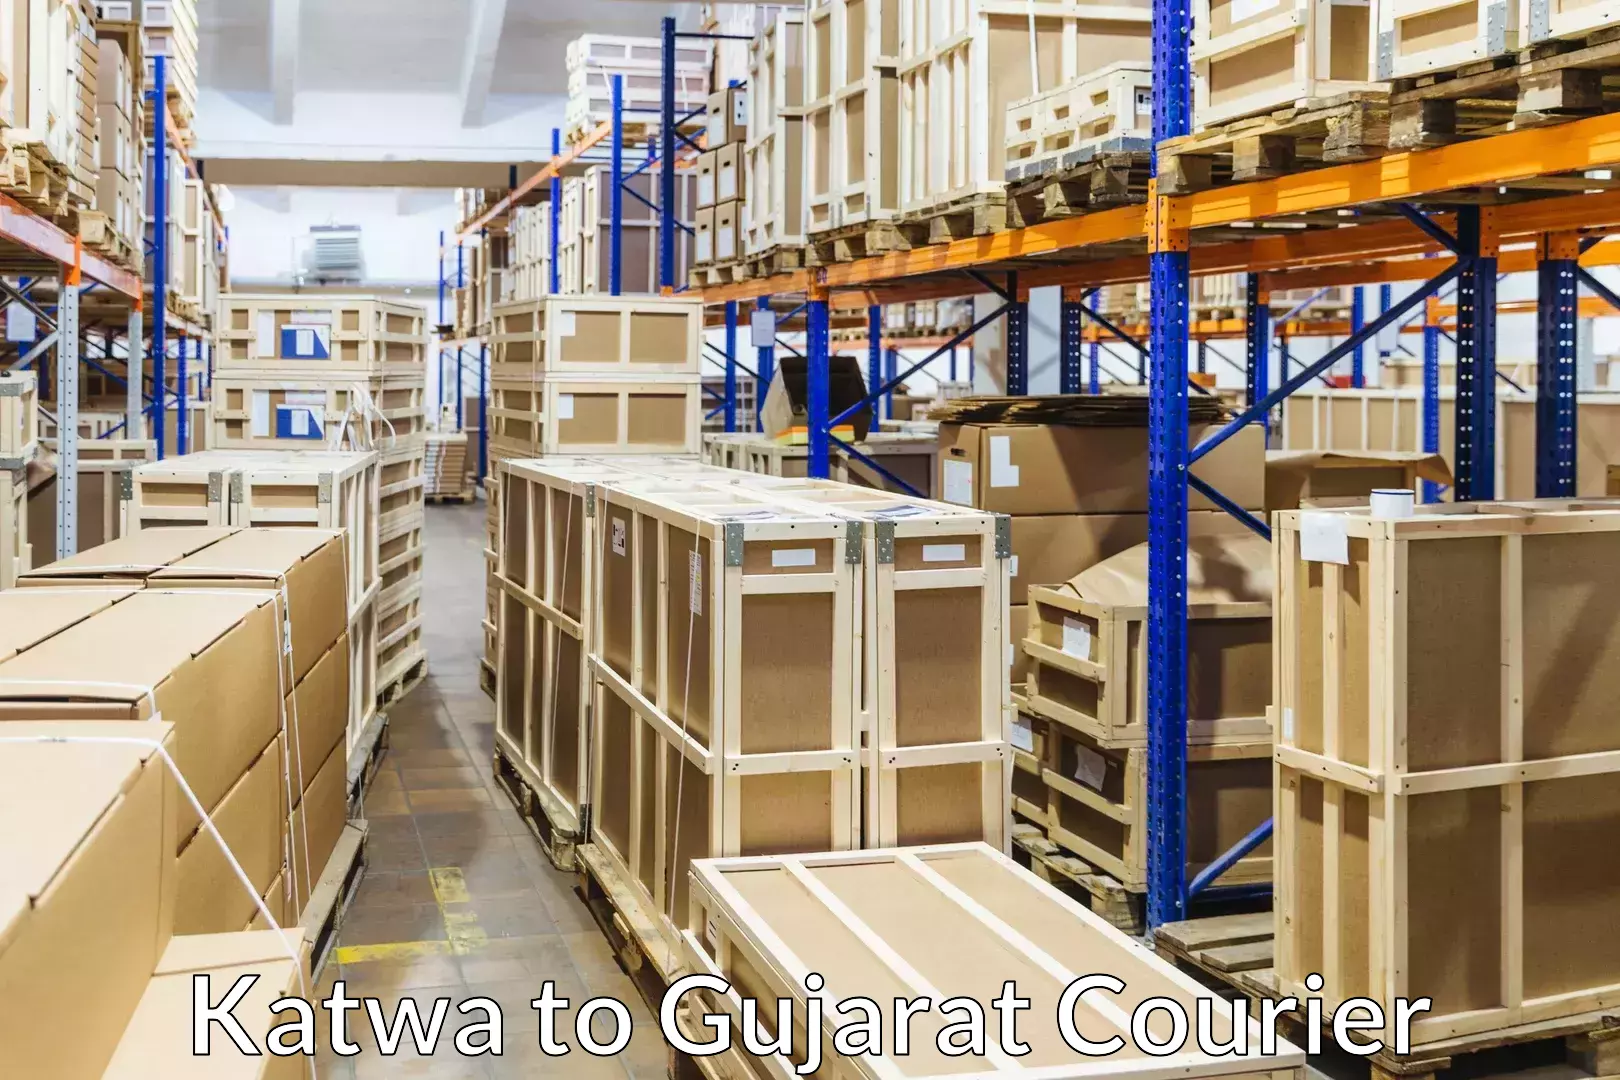 Furniture moving experts Katwa to Patan